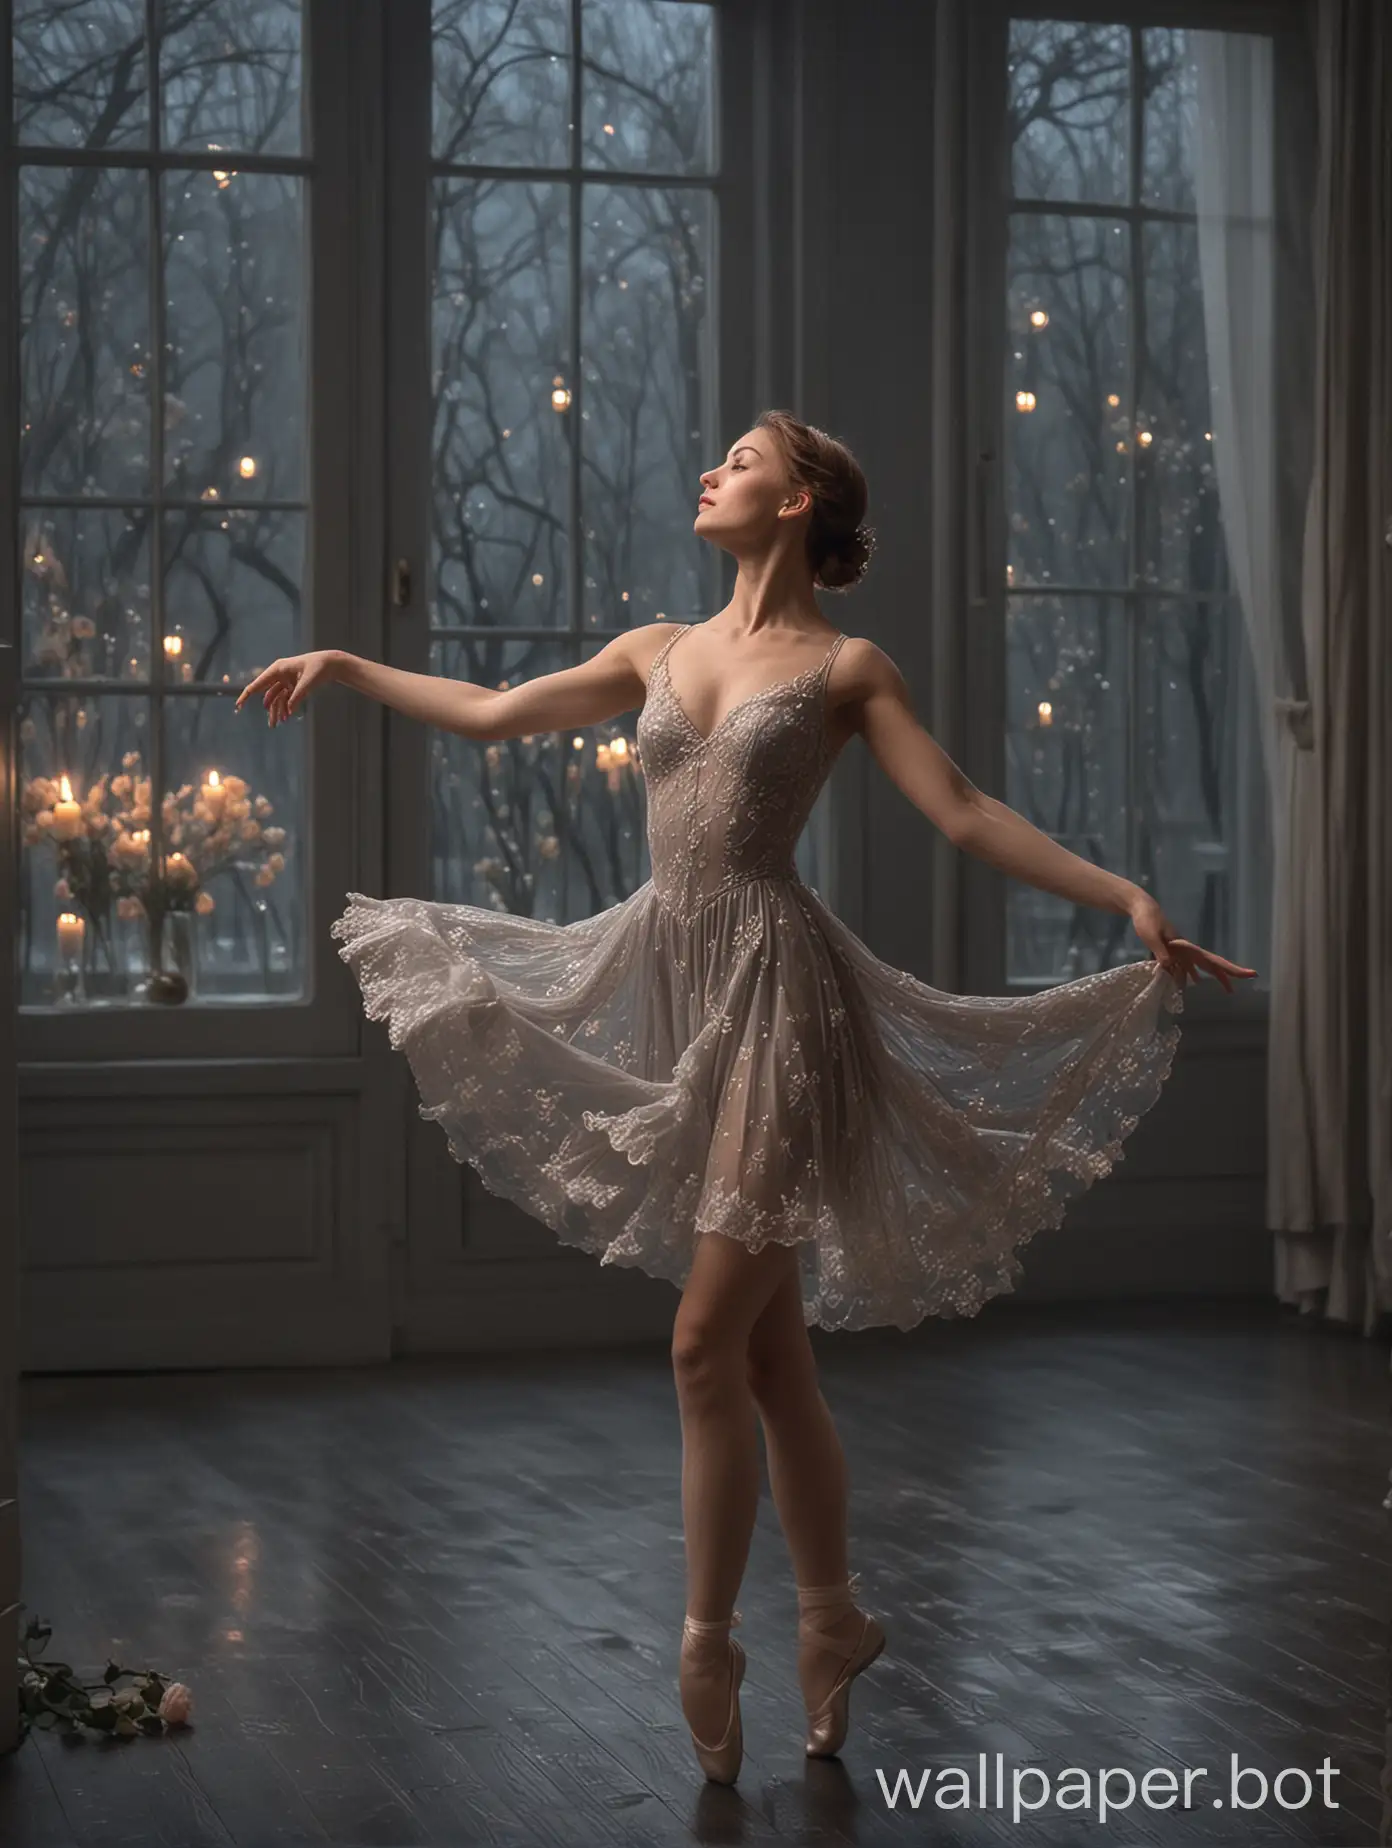 Ethereal-Ballet-Solo-Graceful-Russian-Ballerina-Dancing-in-Moonlit-Room